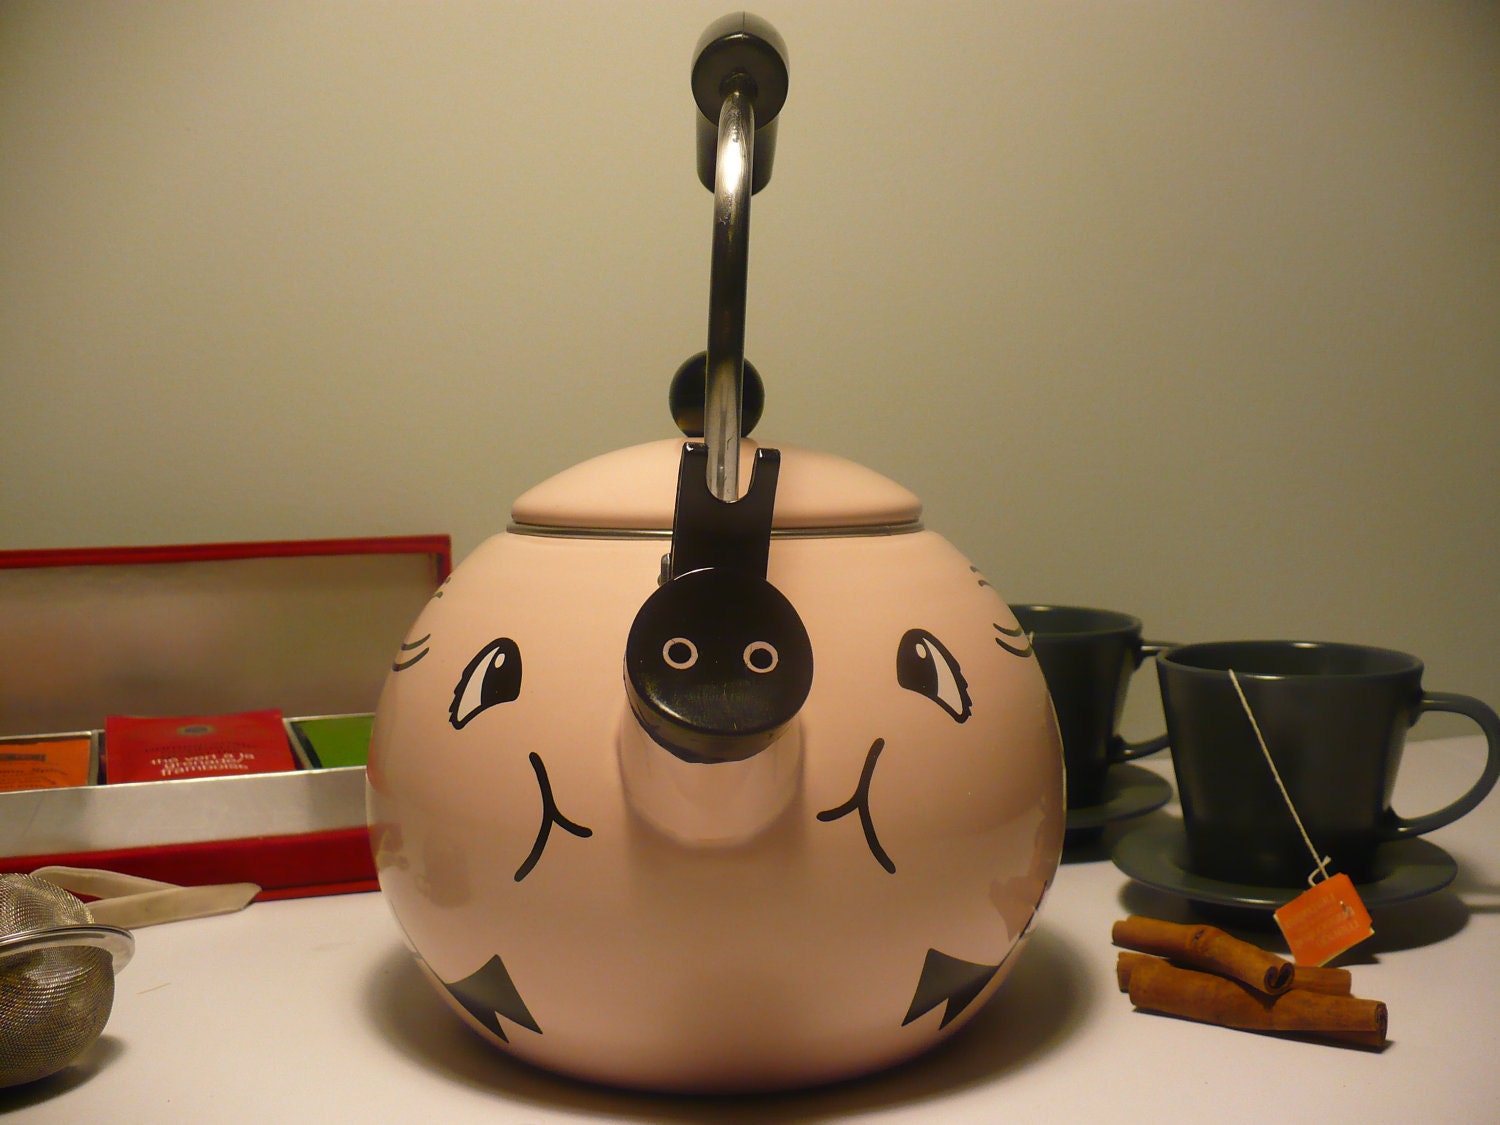 Pig Teapot